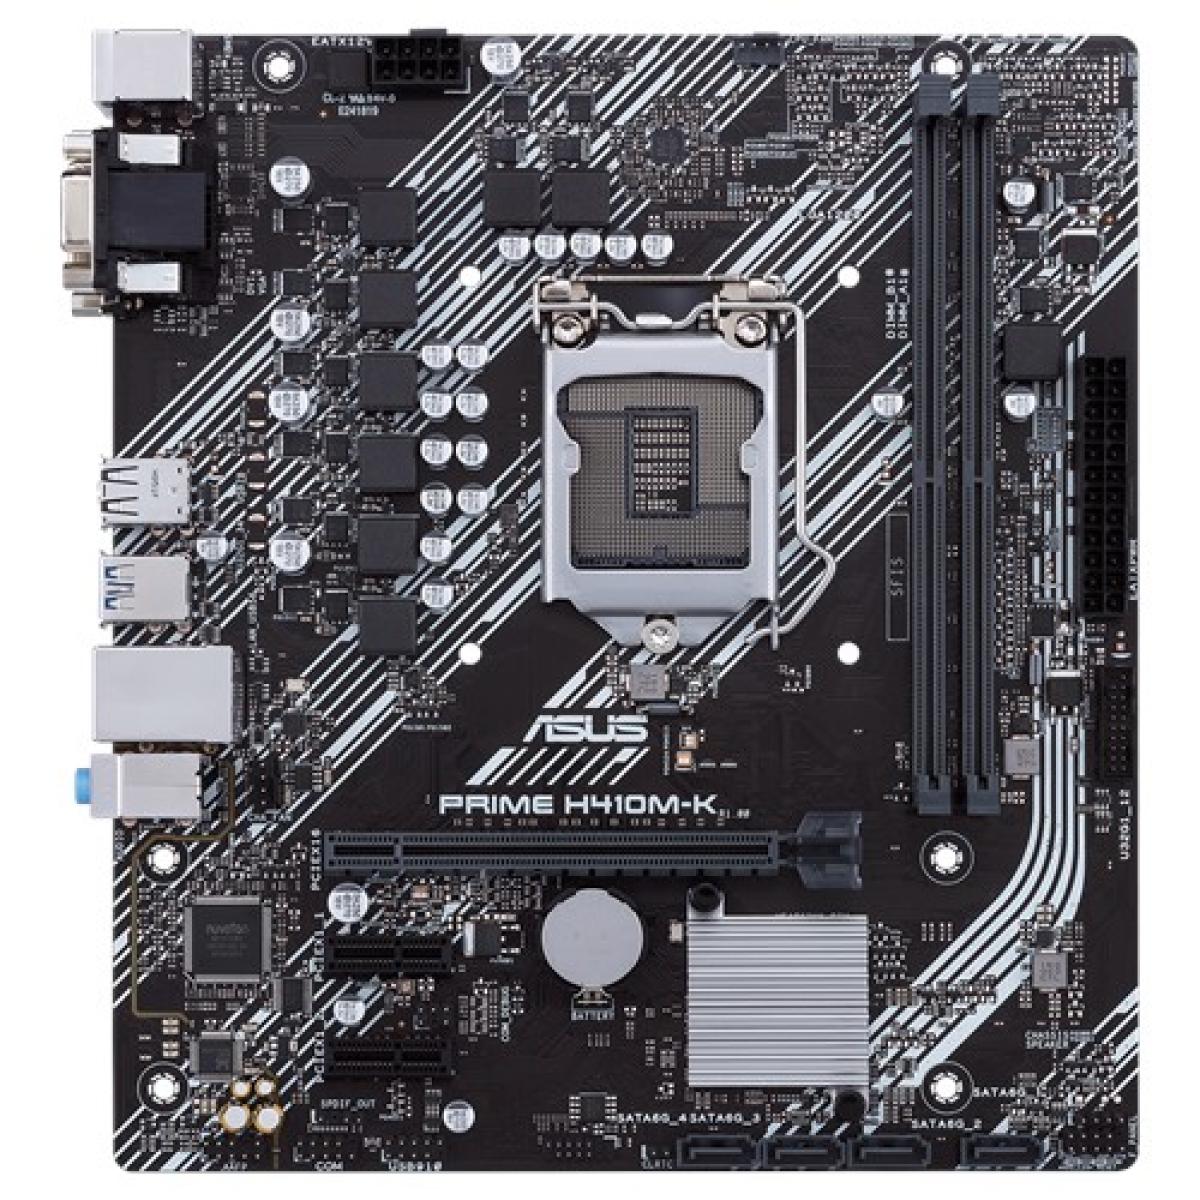 ASUS PRIME H410M-K Intel® H410 (LGA 1200) mic-ATX motherboard with DDR4